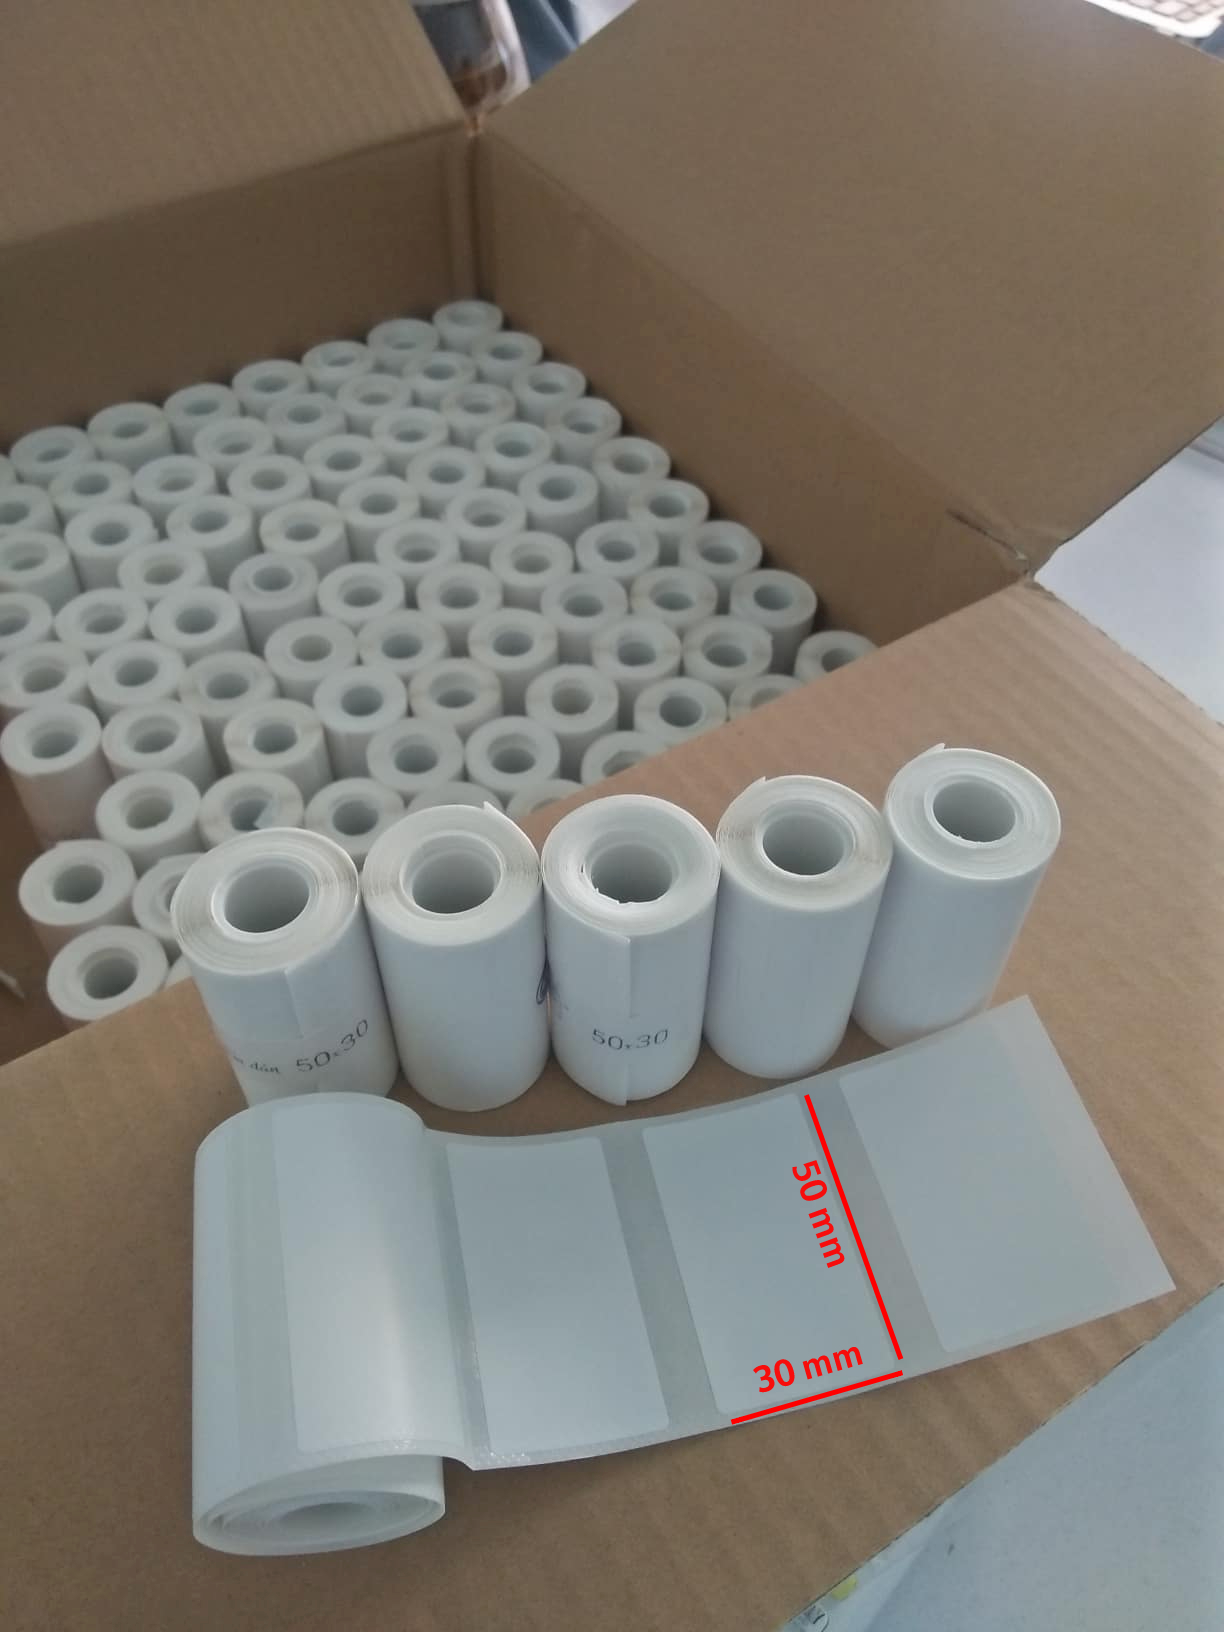 Giấy in nhiệt tem nhãn 50x30mm  cuộn nhỏ dành cho máy in cầm tay ( 5 cuộn giấy)